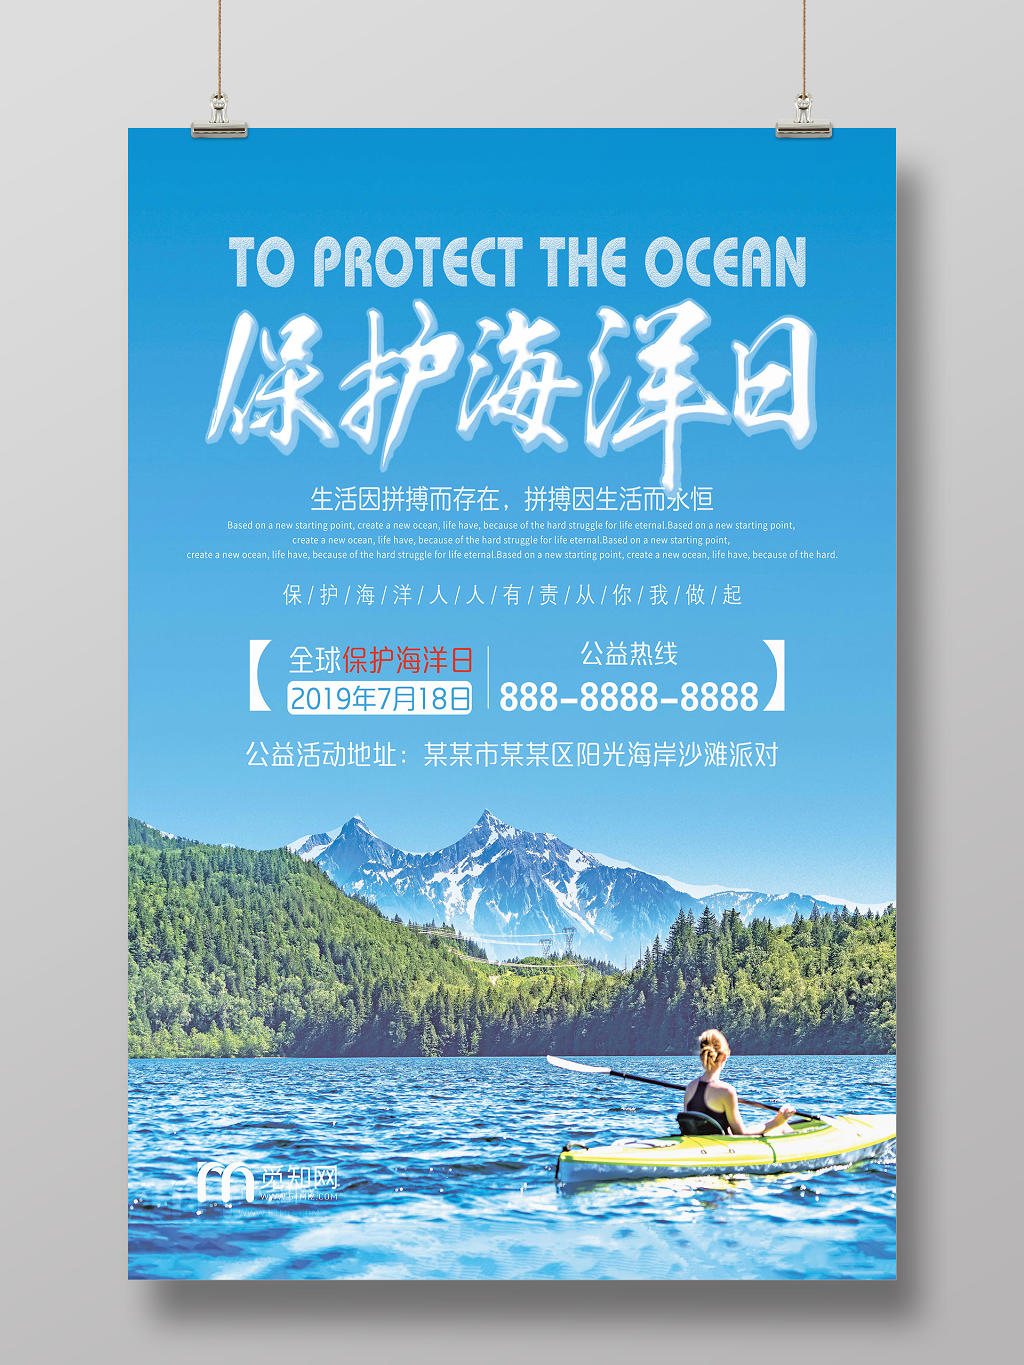 蓝色背景保护海洋日公益海报